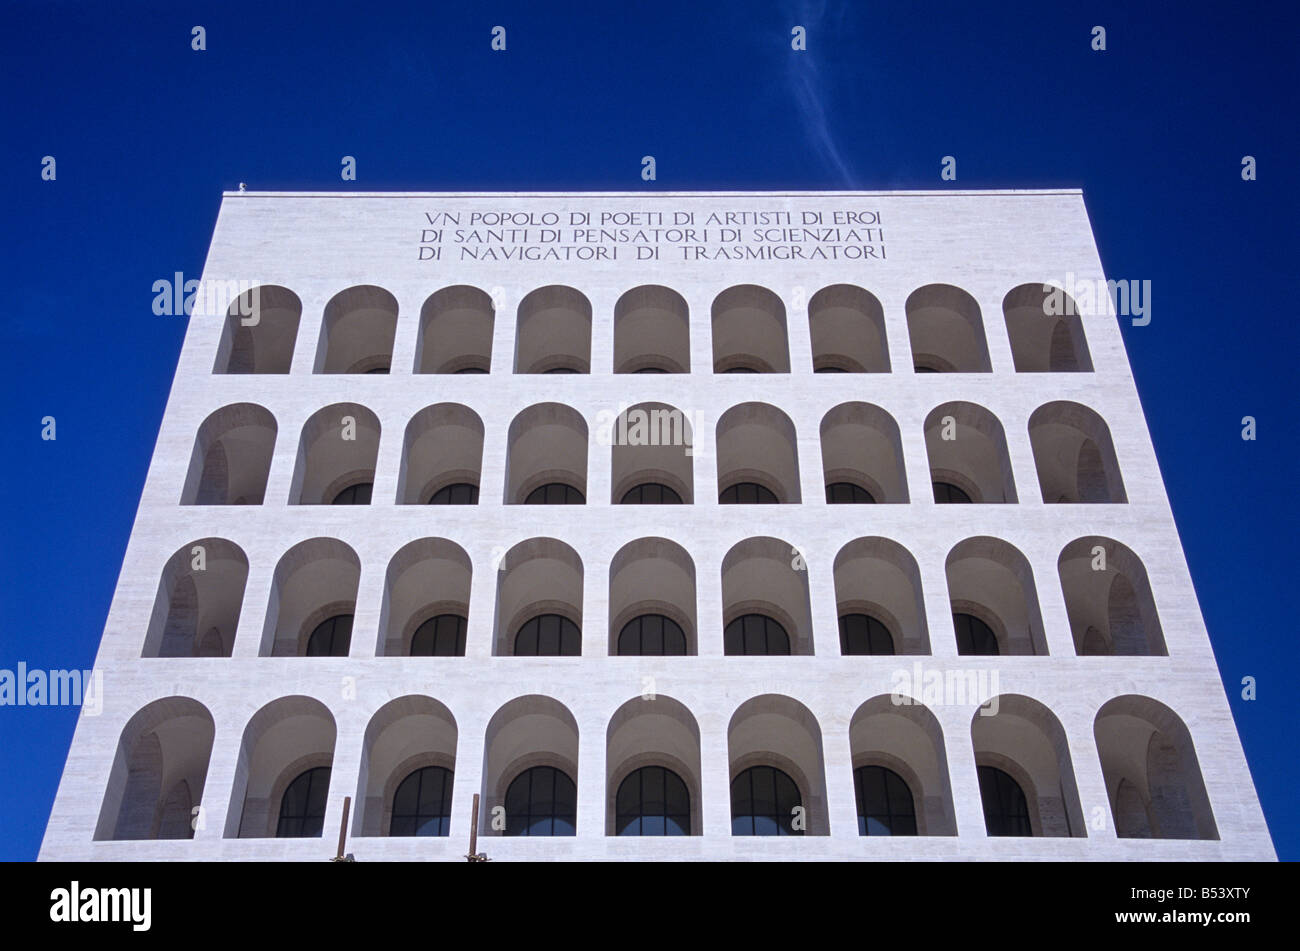 Palazzo della Civiltà del Lavoro, EUR, Rome, Italy Stock Photo